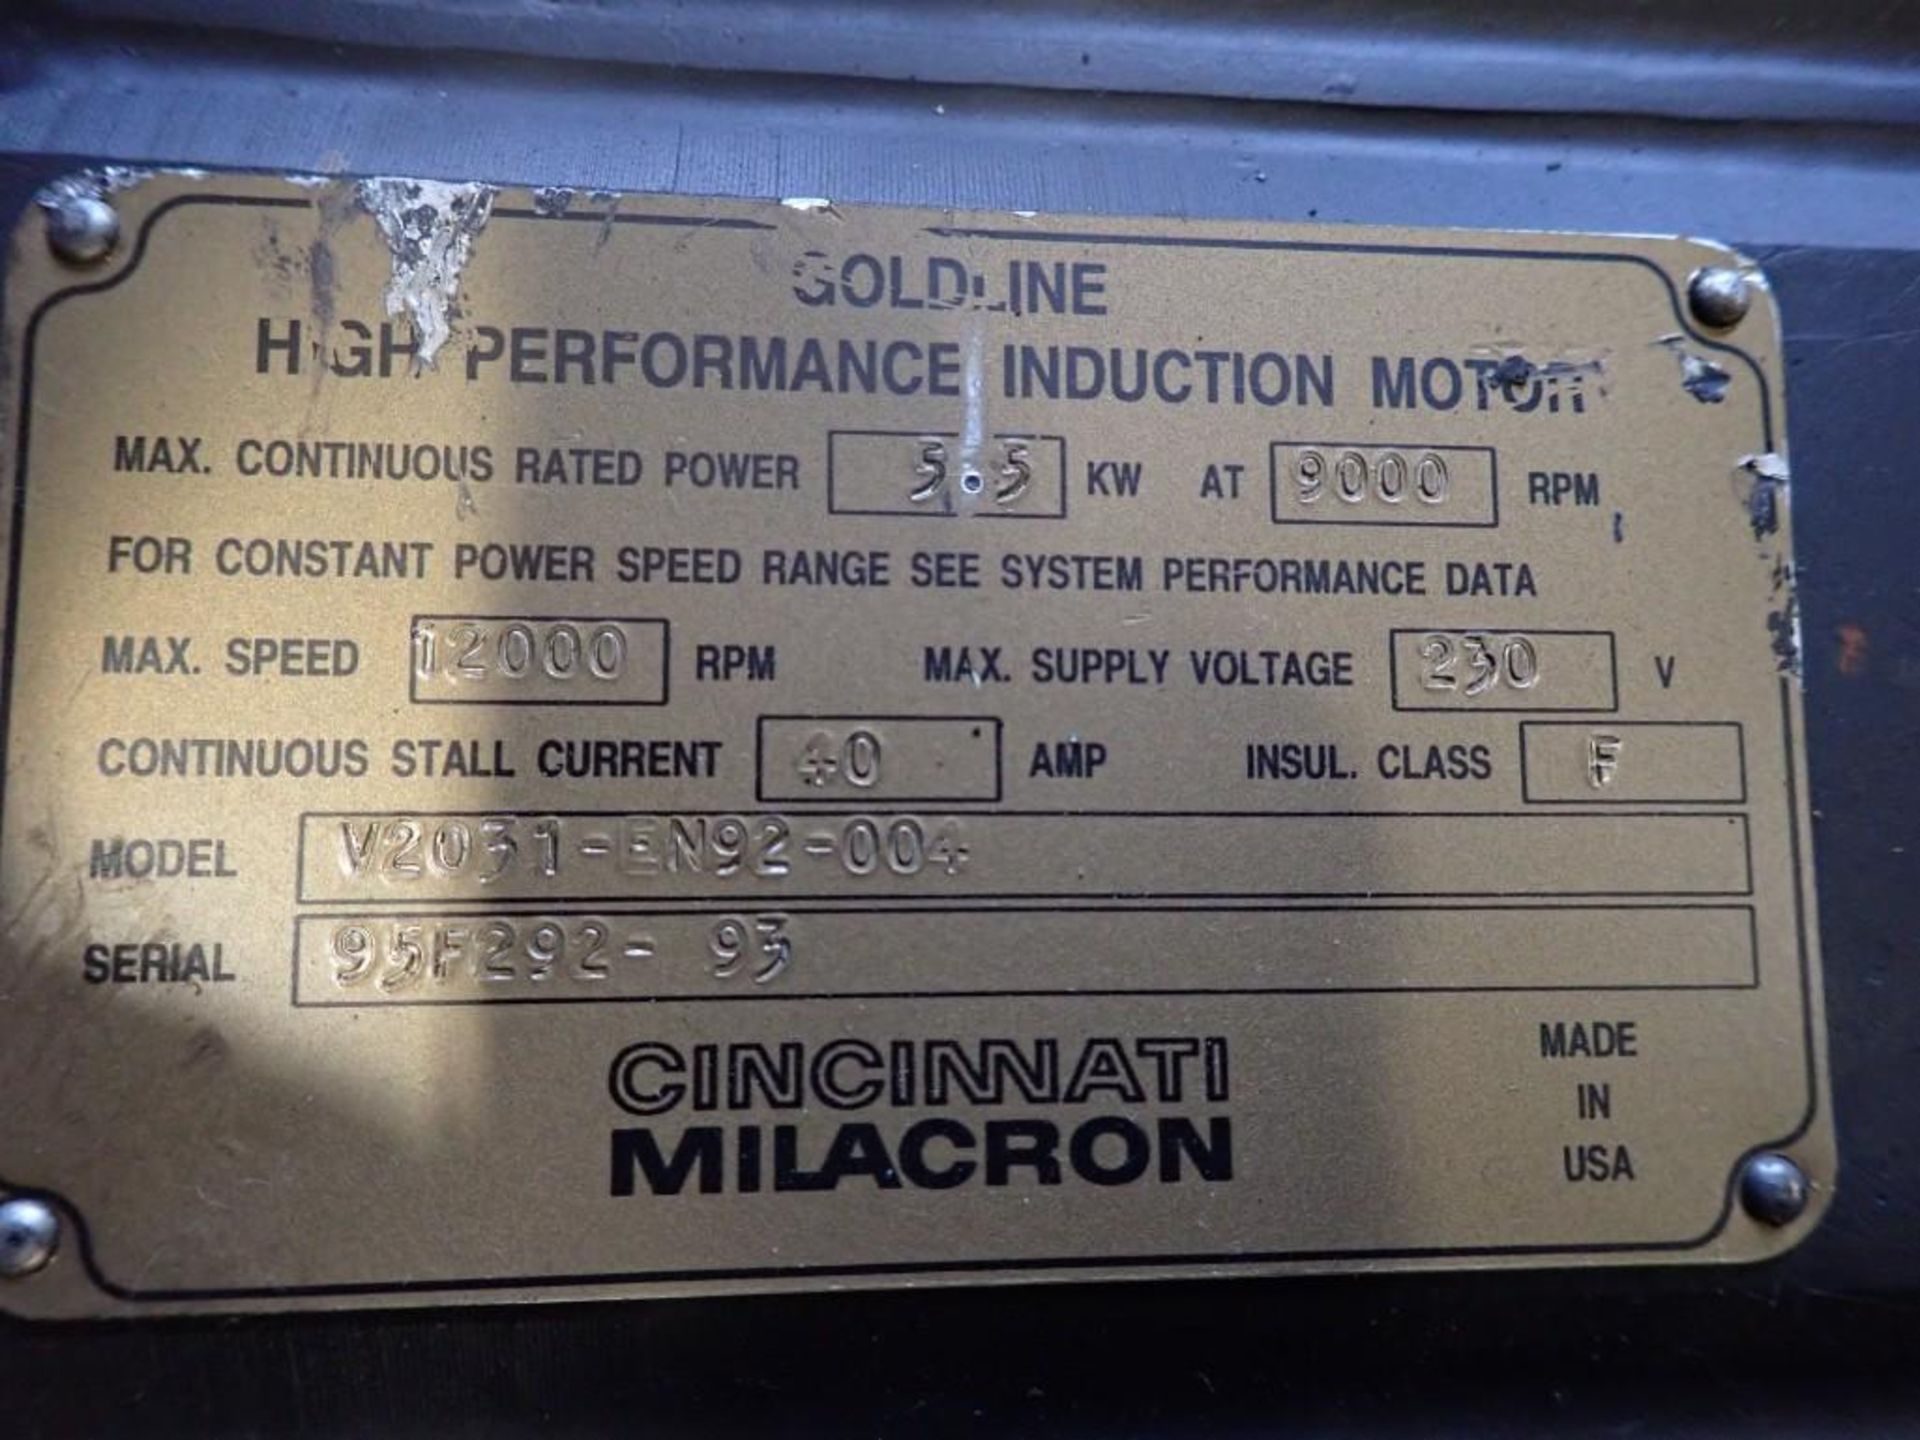 Goldline / Cincinnati #V2031-EN92-004 Servo Motor - Image 4 of 10